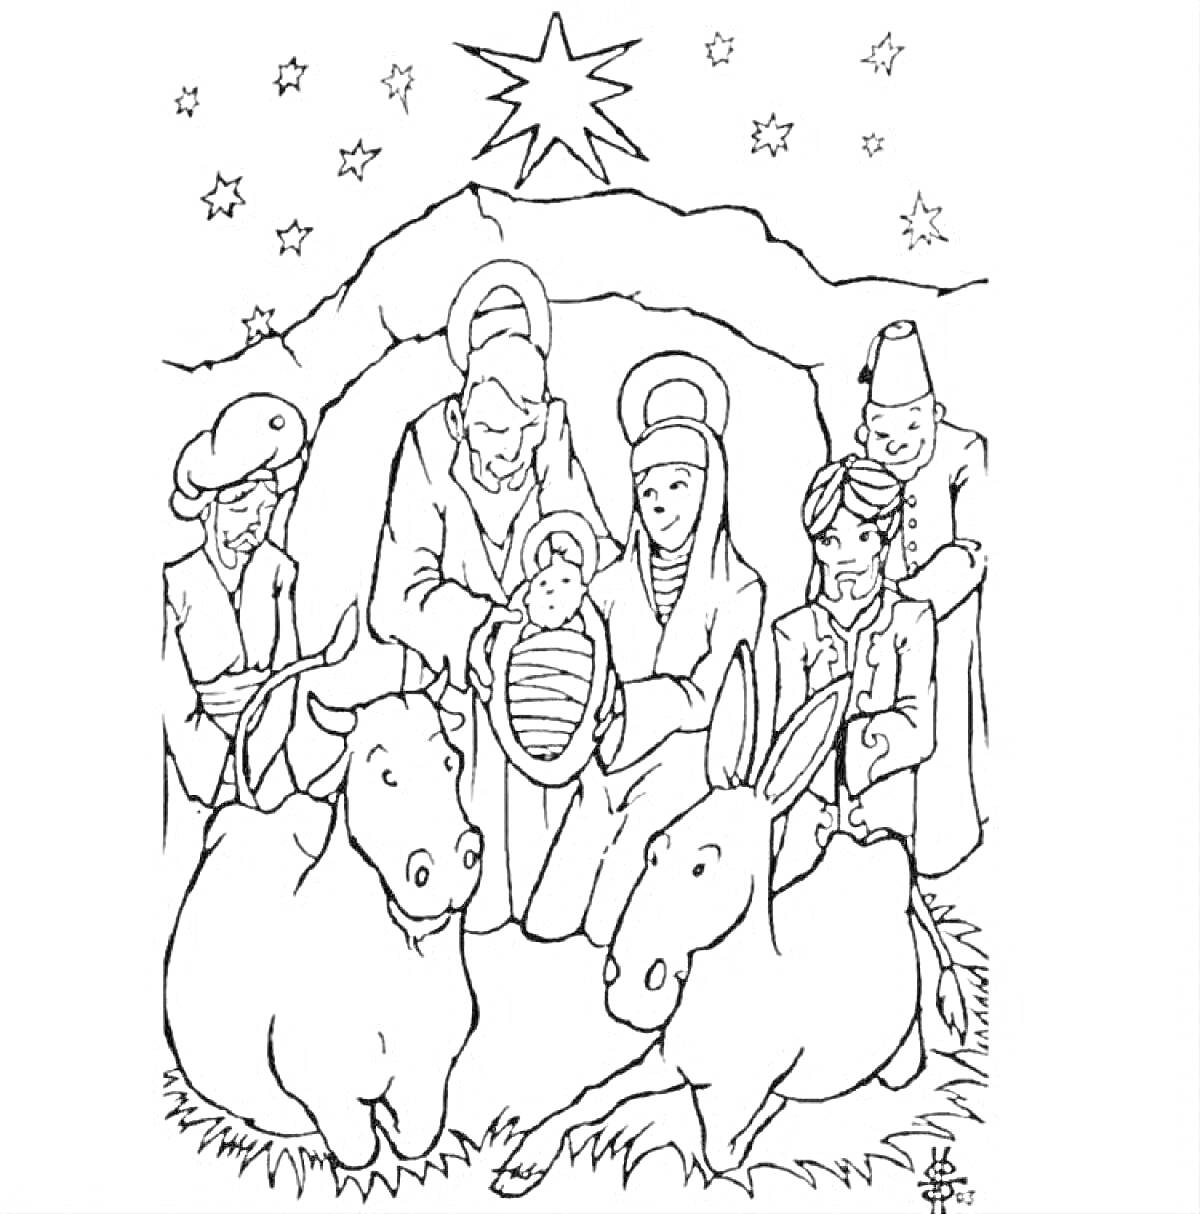 Вифлеемская звезда с изображением рождественской сцены в вертепе, включающей младенца Иисуса, Древо Мария, Иосифа, трех мудрецов, вола, ослика и звезды на небе